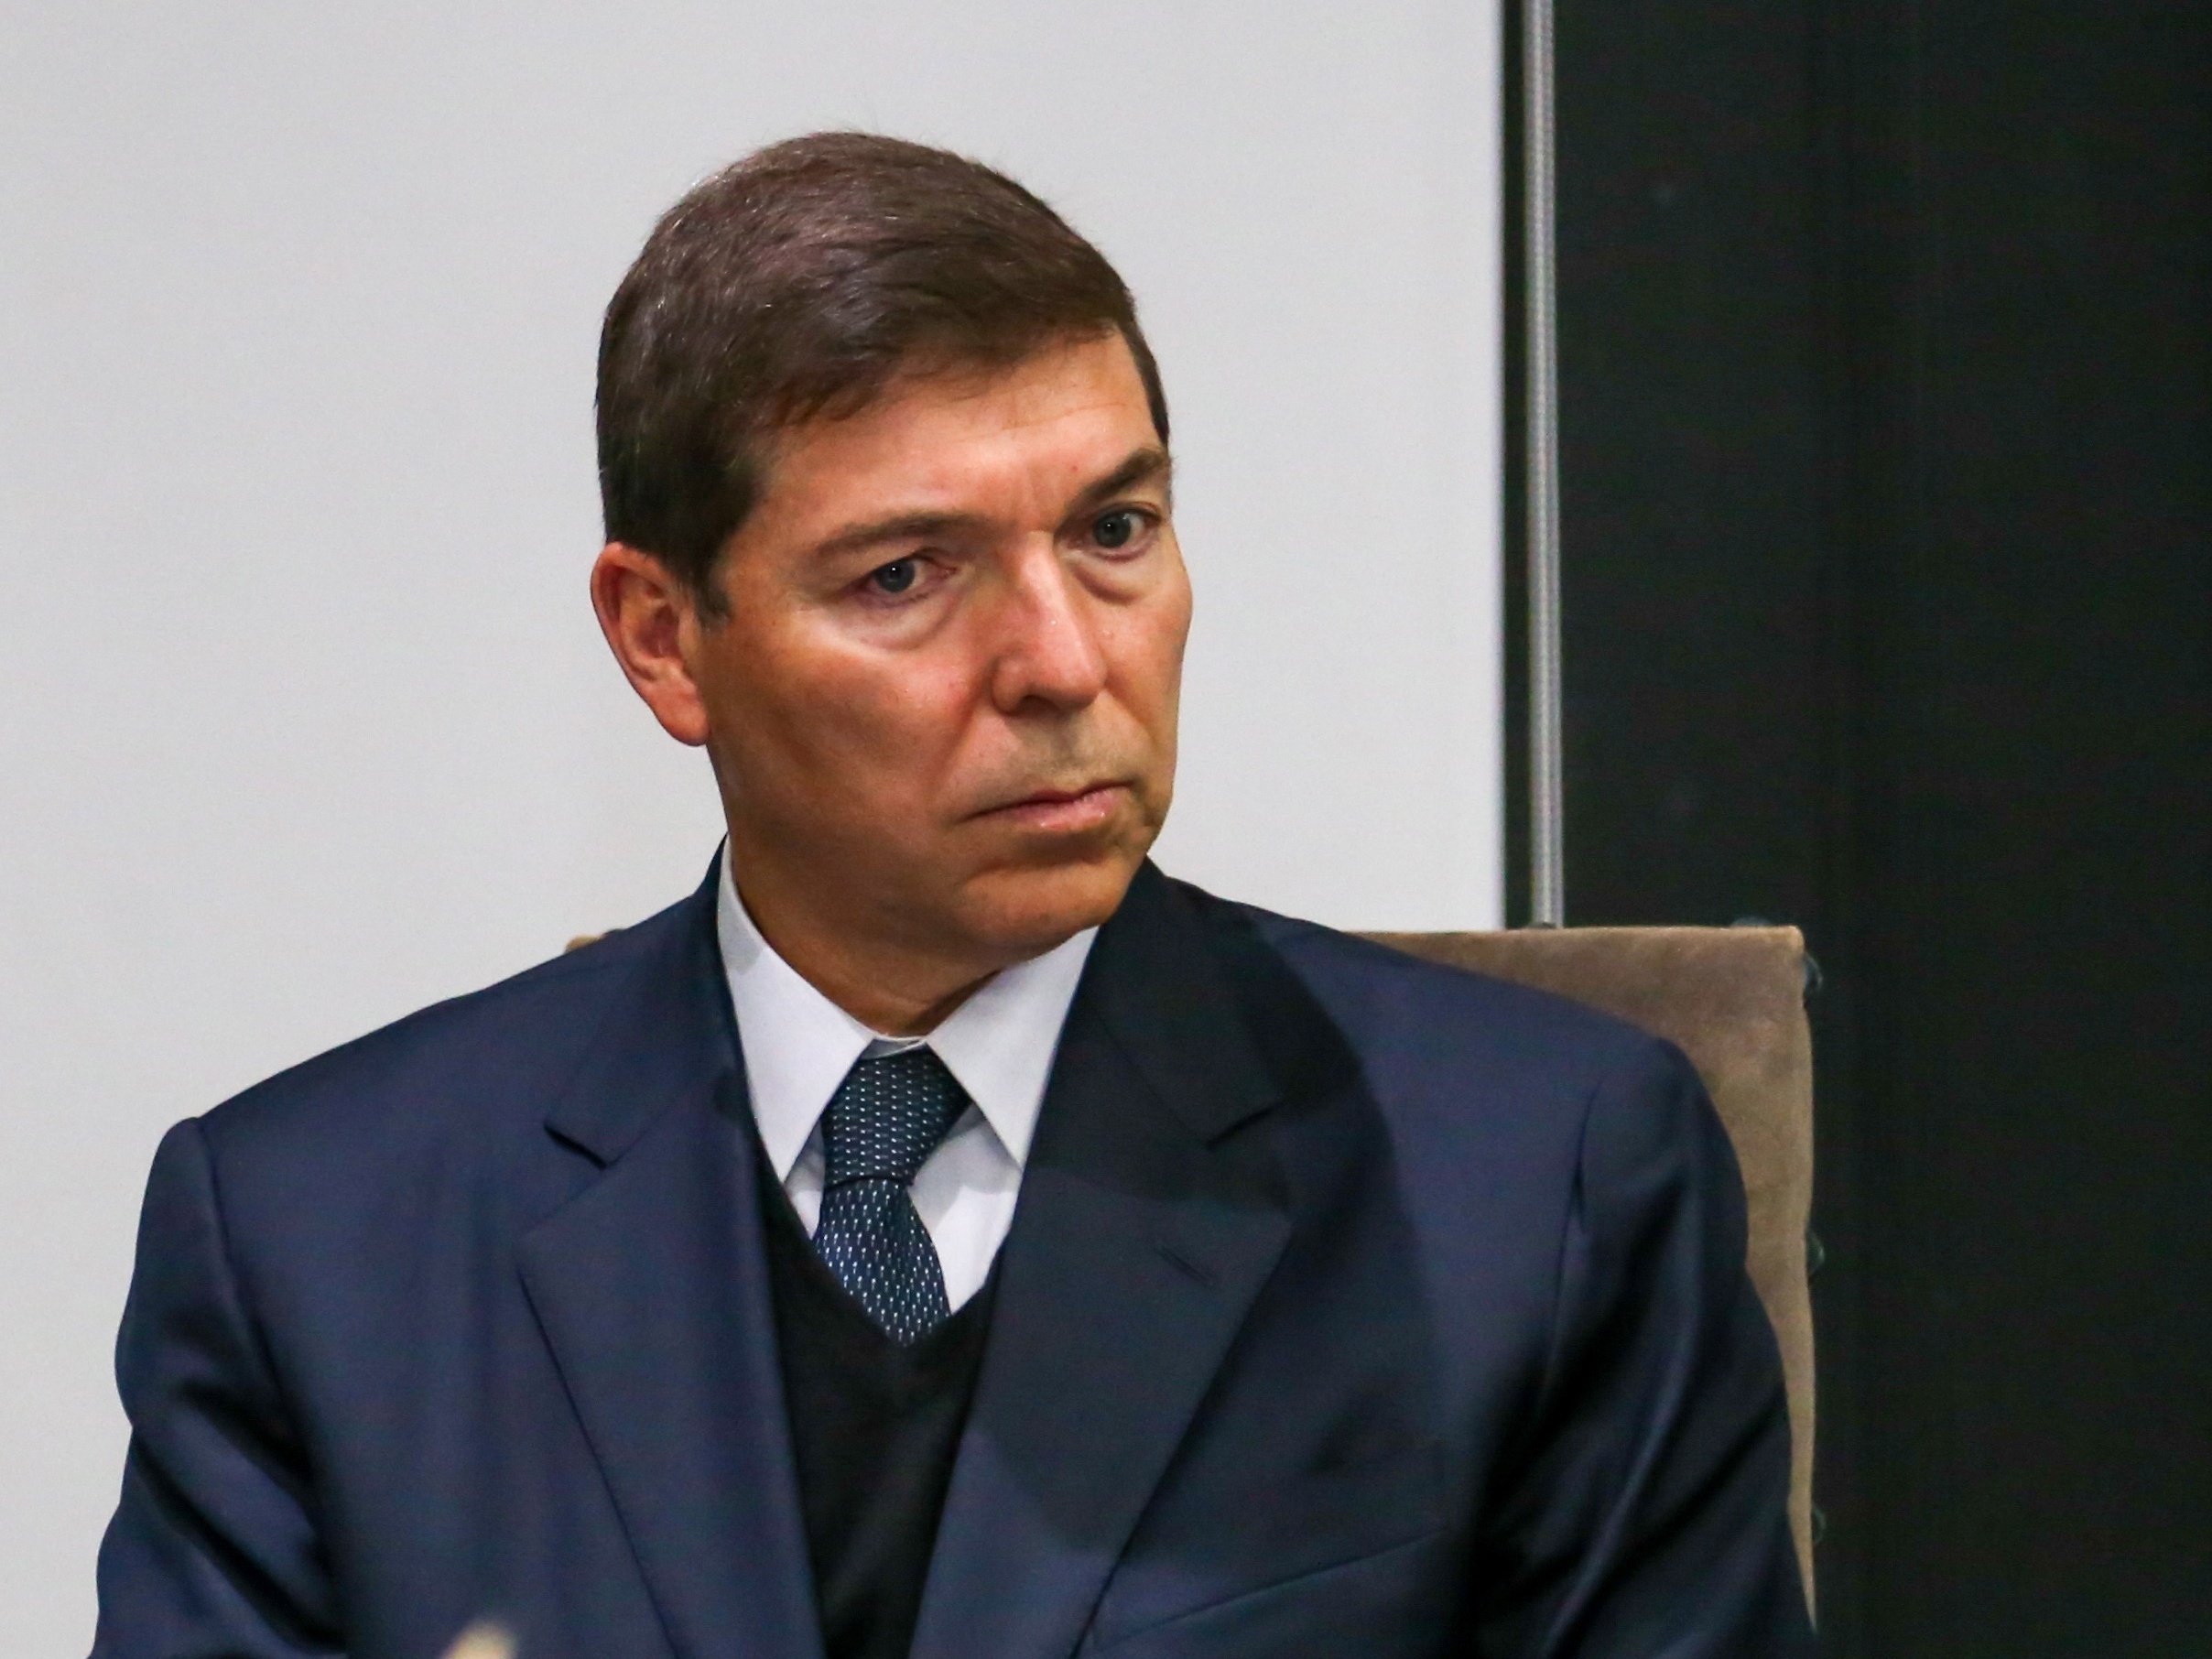 Josué Gomes reage à oposição que tenta tirá-lo da presidência da Fiesp